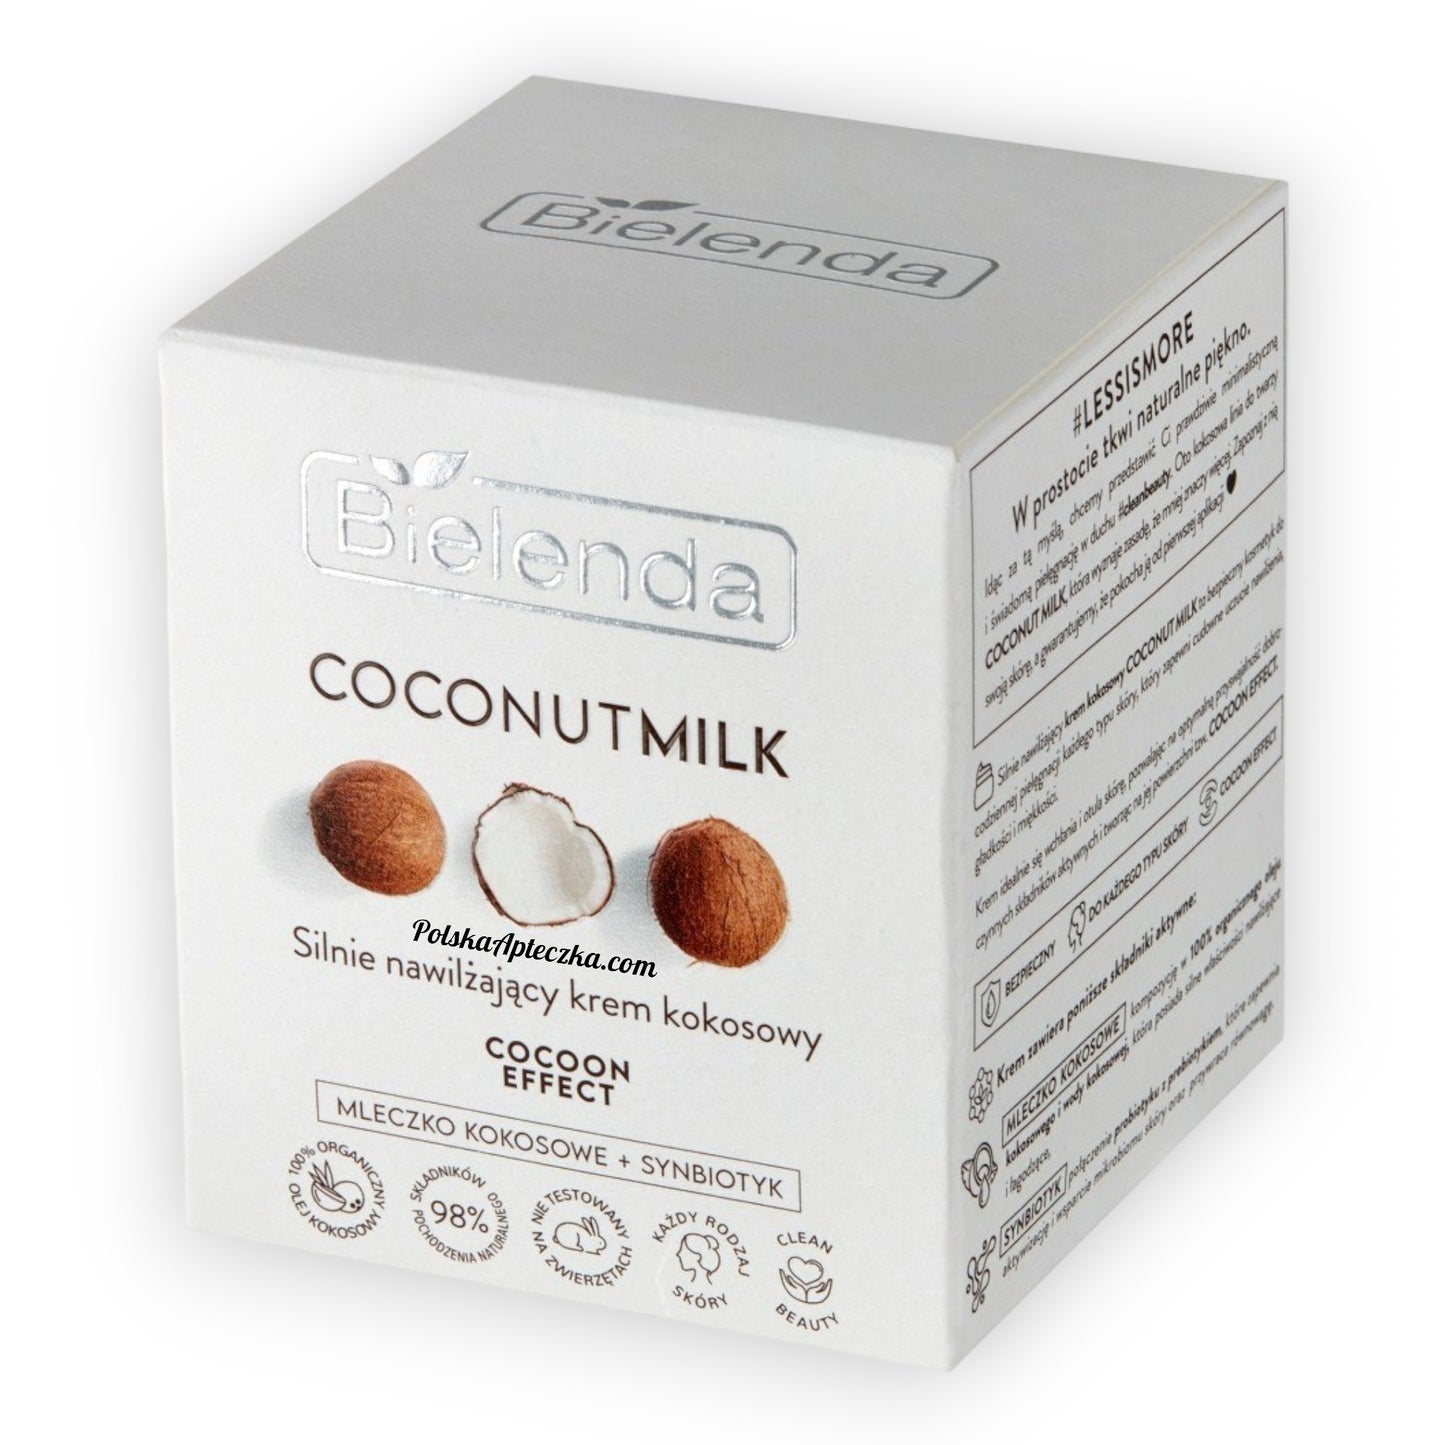 Bielenda, Coconut Milk Silnie nawilżający krem kokosowy Cocoon Effect 50ml